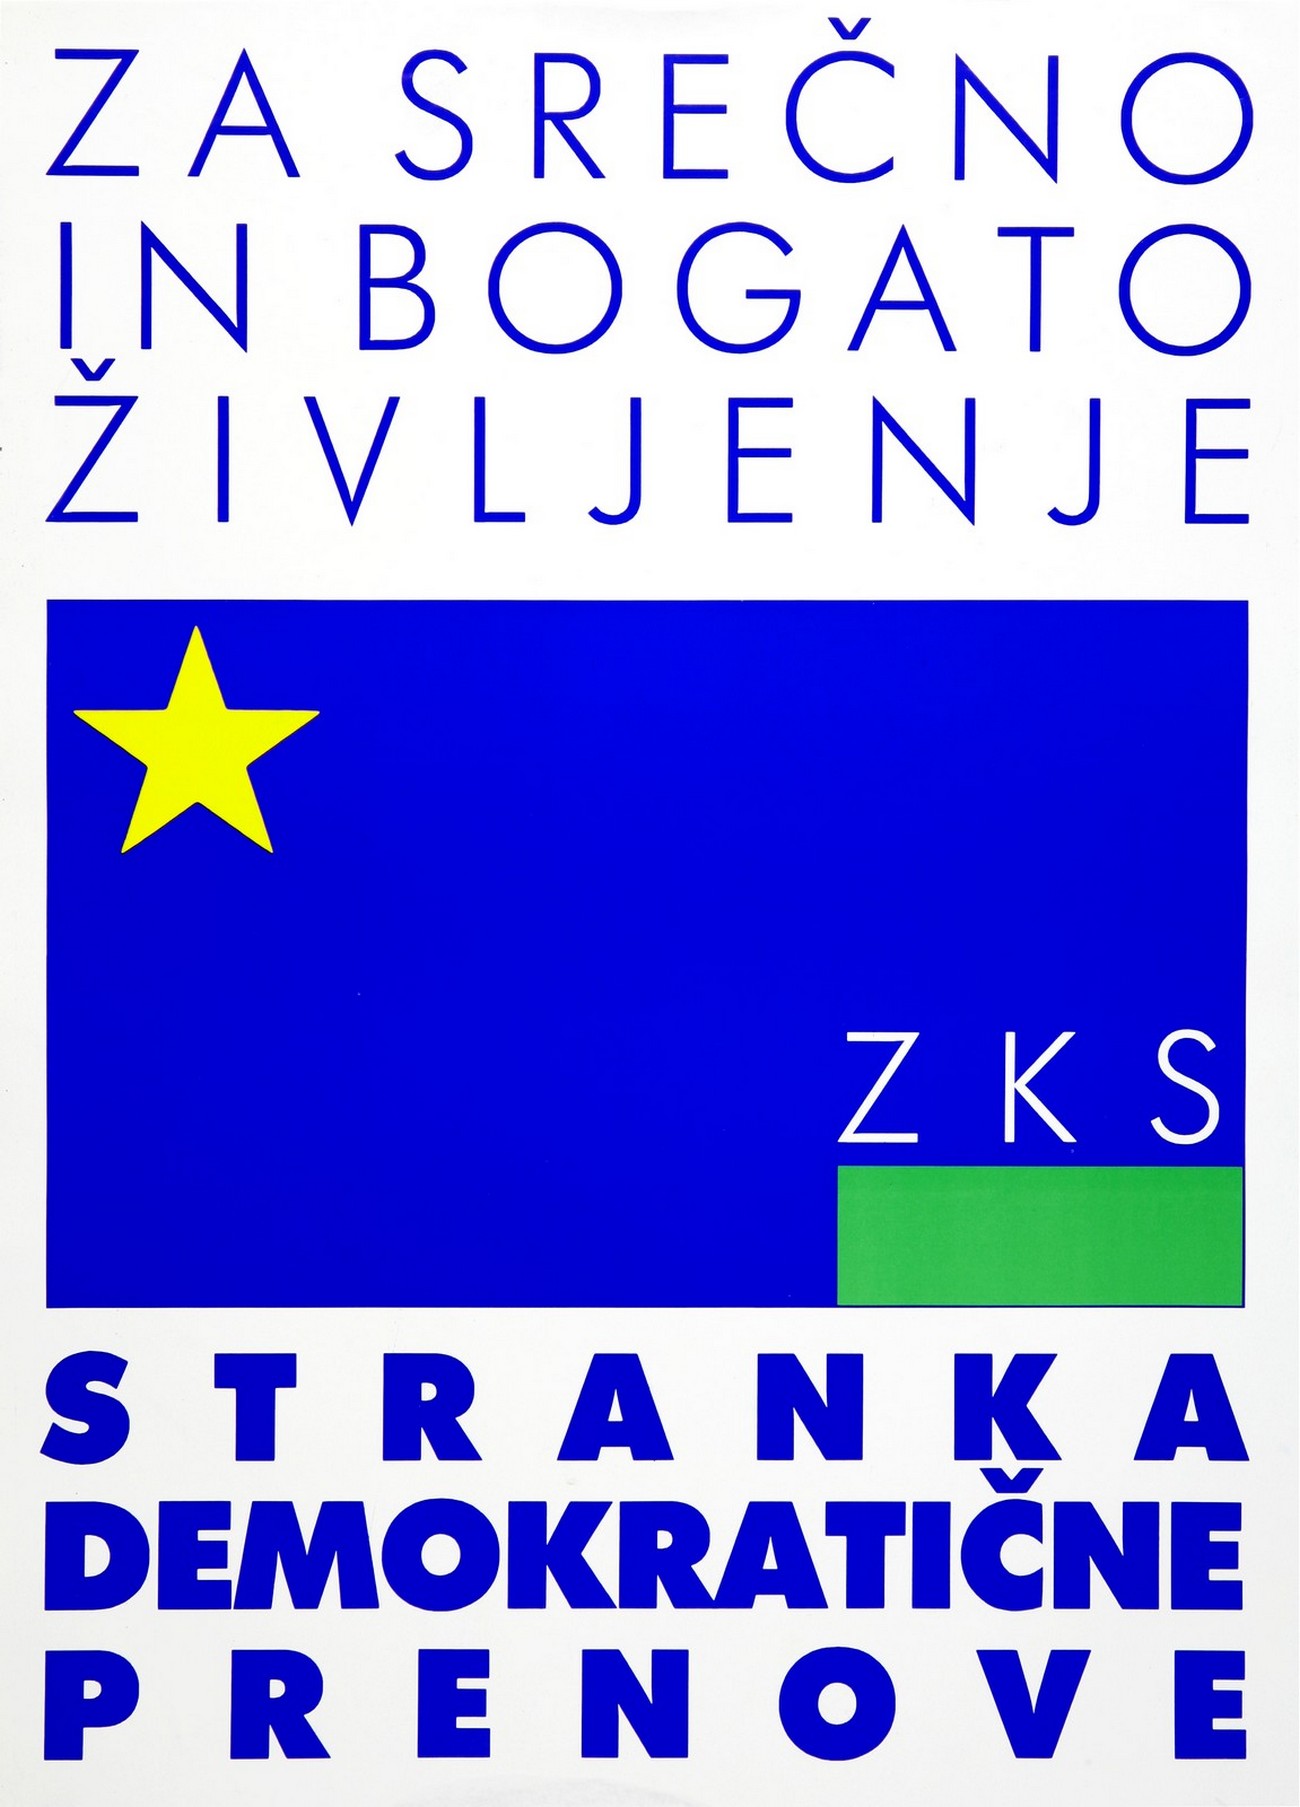 Volilni plakat ZKS – Stranka demokratične prenove, 1990, hrani Muzej novejše zgodovine Slovenije.